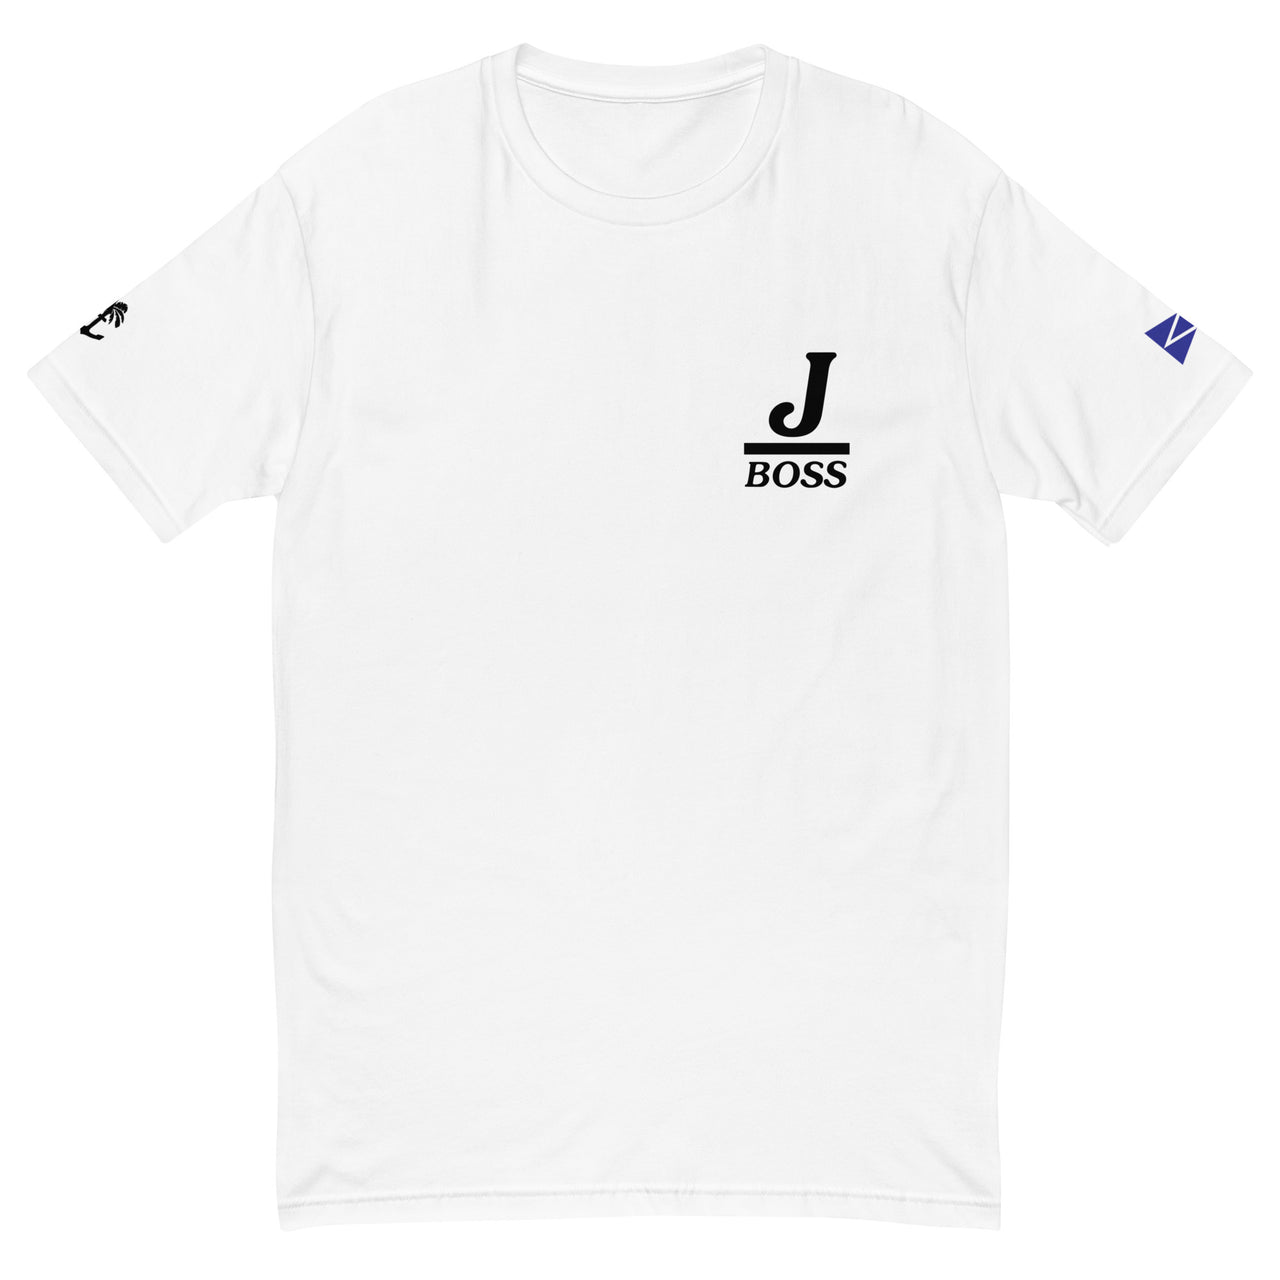 JBOSS- Short Sleeve T-shirt